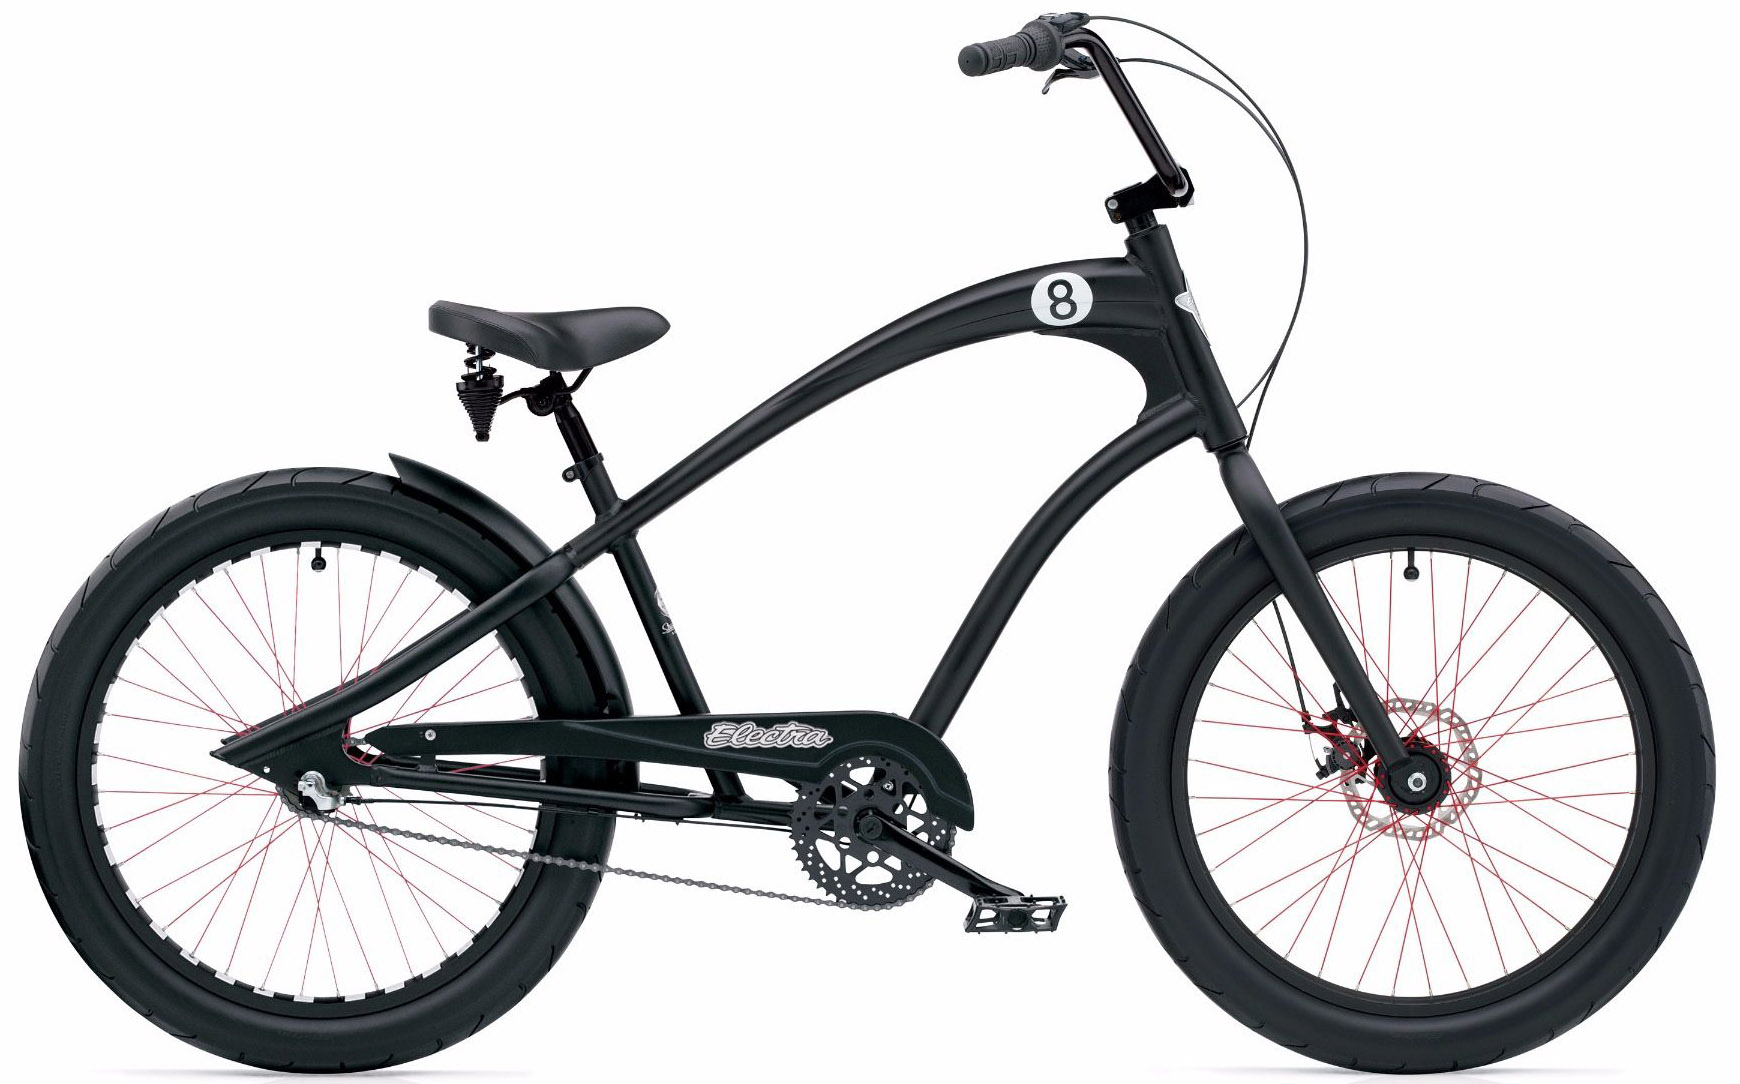  Отзывы о Городском велосипеде Electra Straight 8 8i 2020